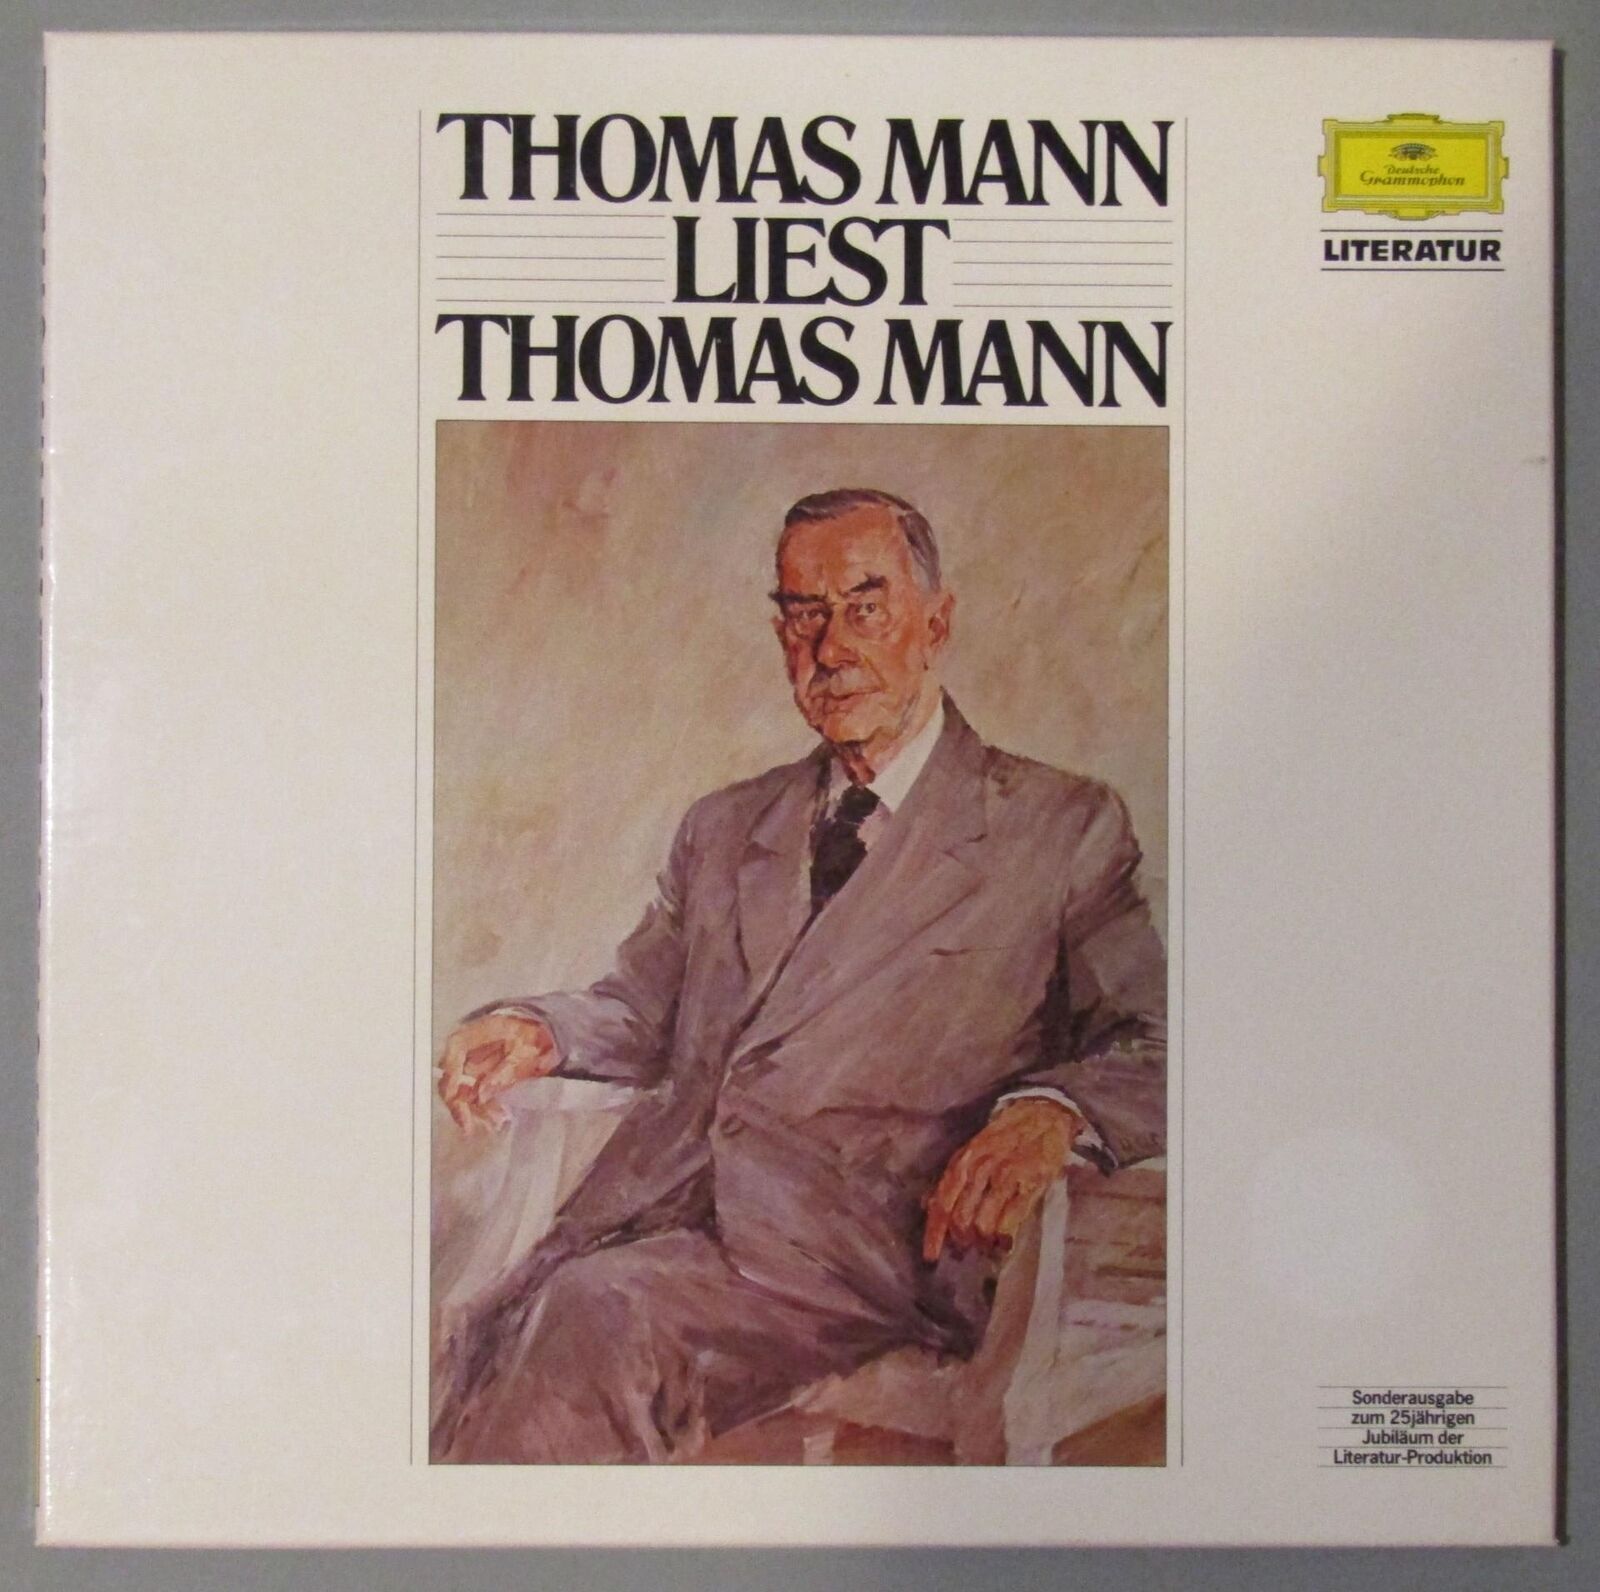 B254 Thomas Mann liest Thomas Mann 4LP DGG 2755 008 Stereo